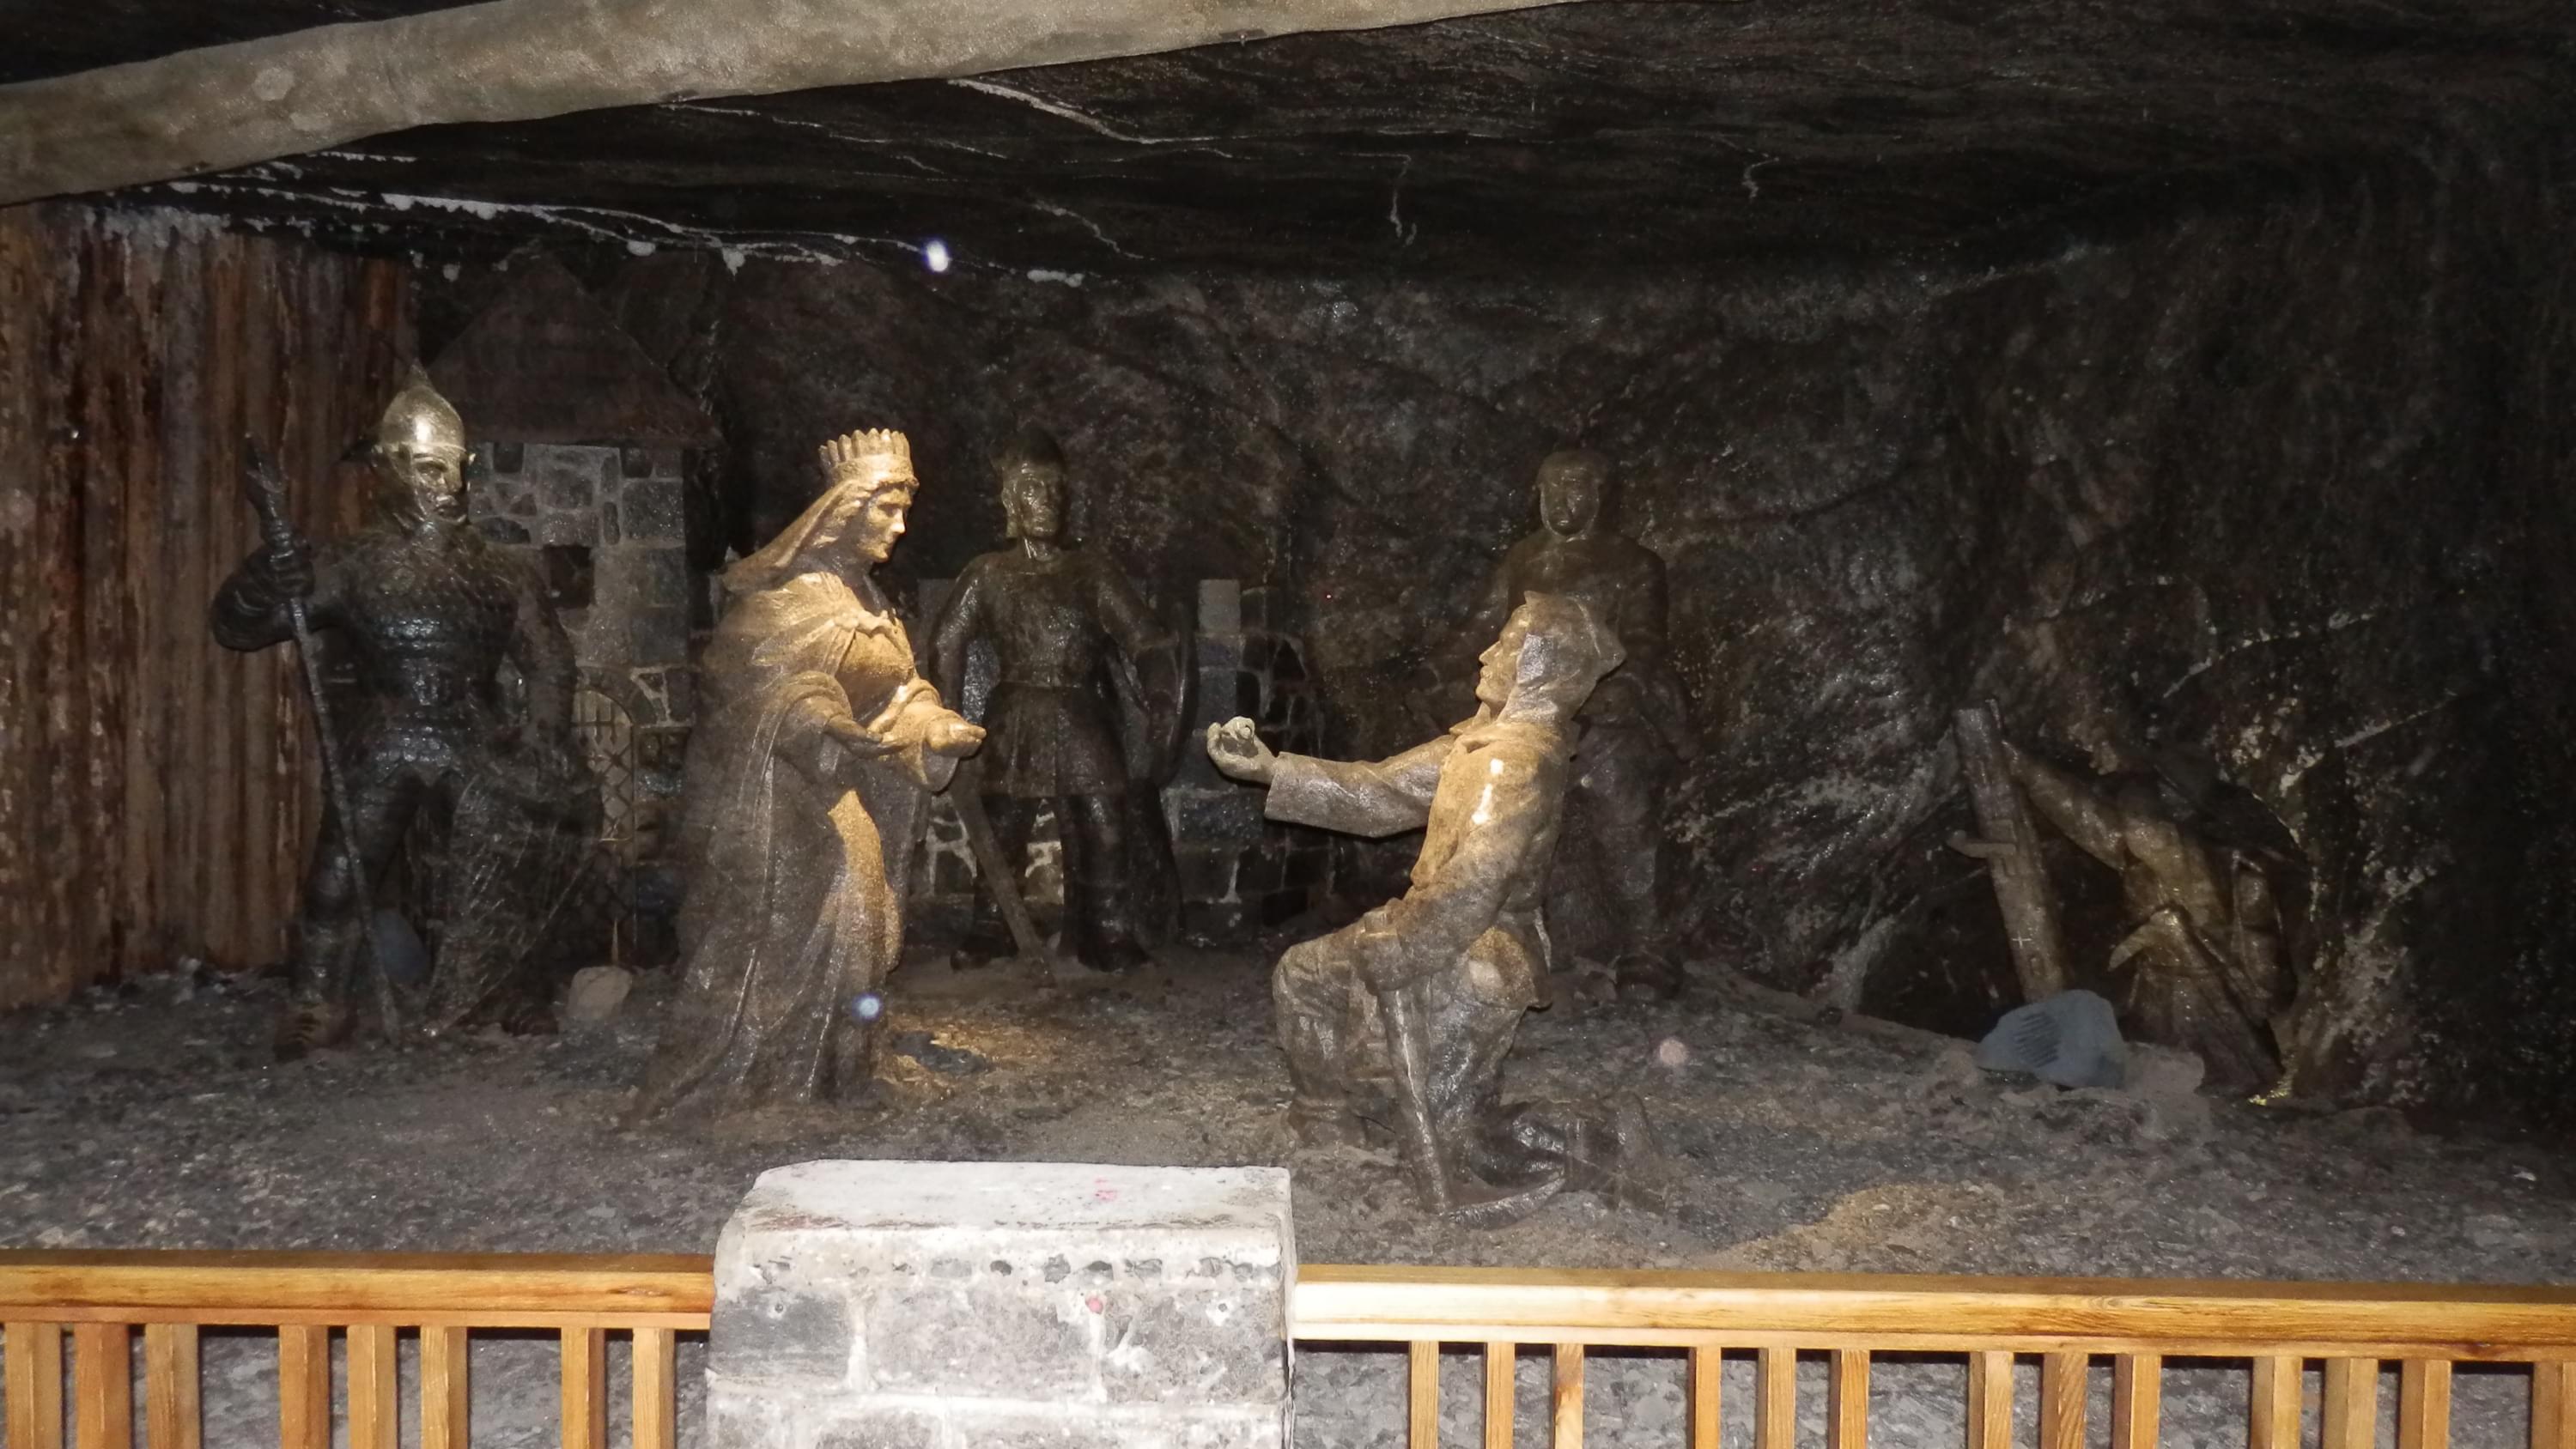 Wieliczka Salt Mine, Krakow